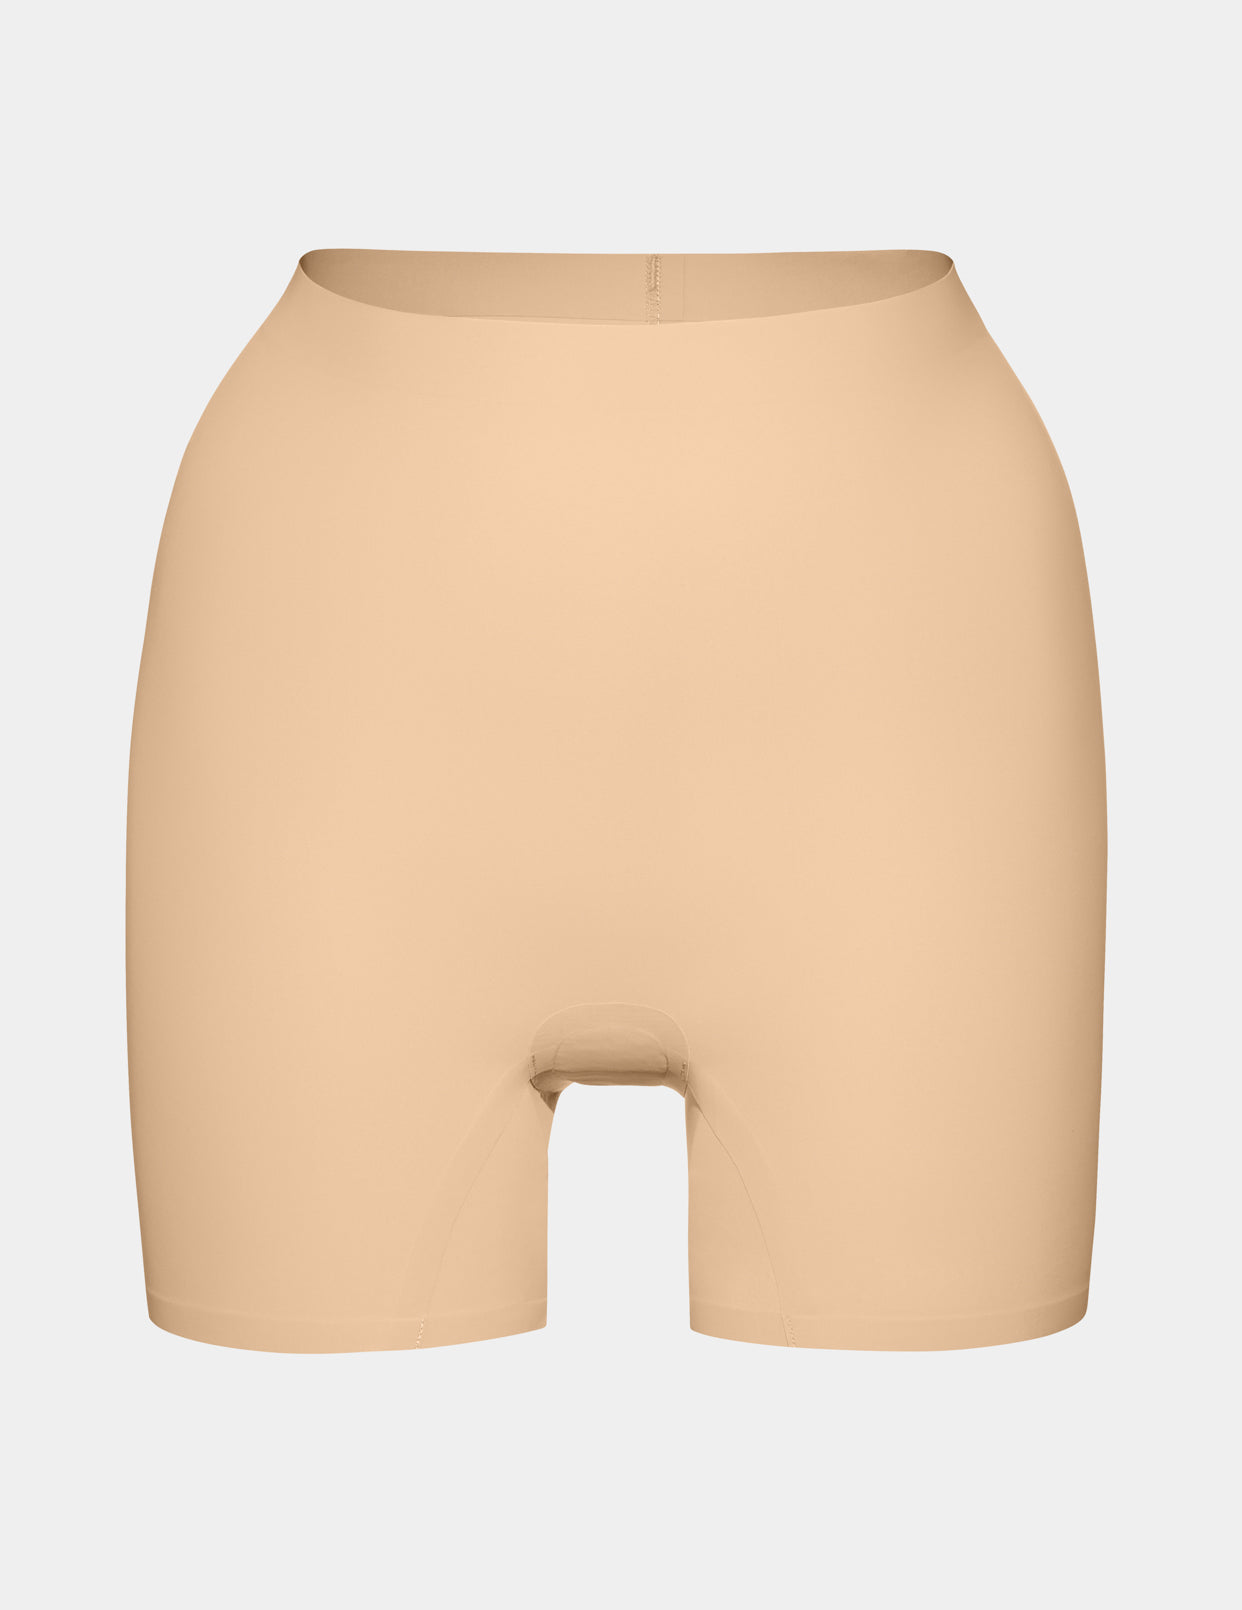 Shapewear bodystocking shorts - Beige